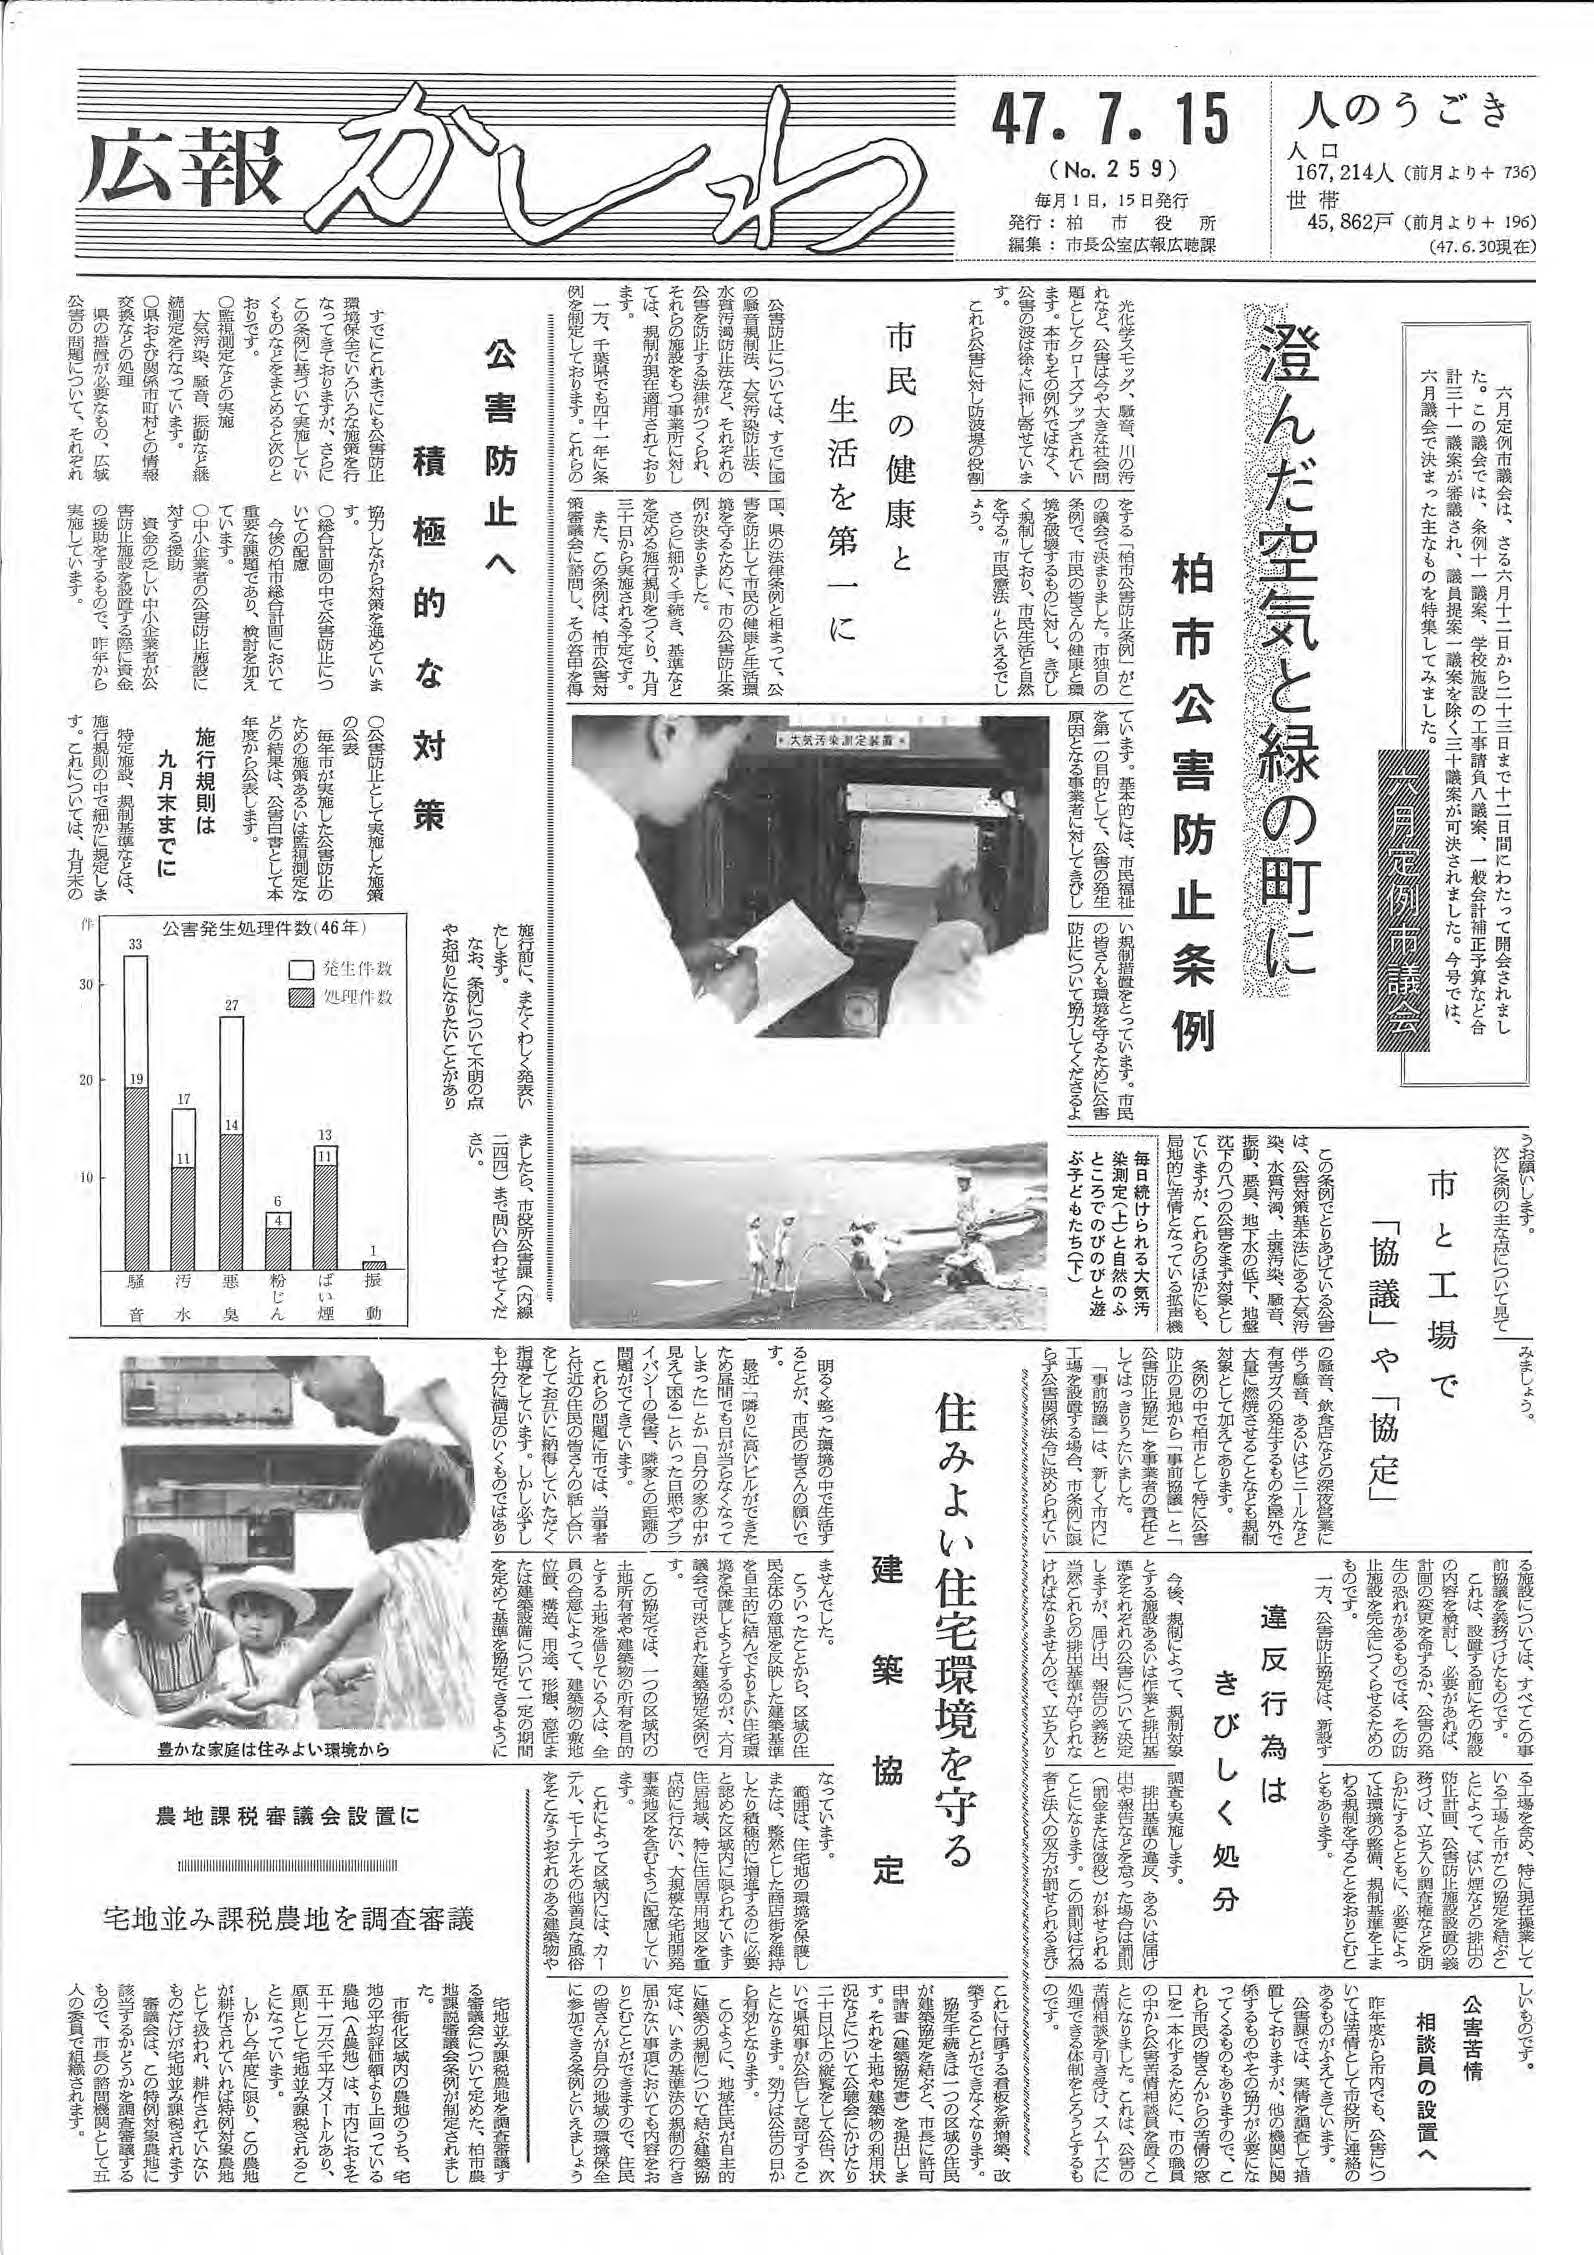 広報かしわ　昭和47年7月15日発行　259号